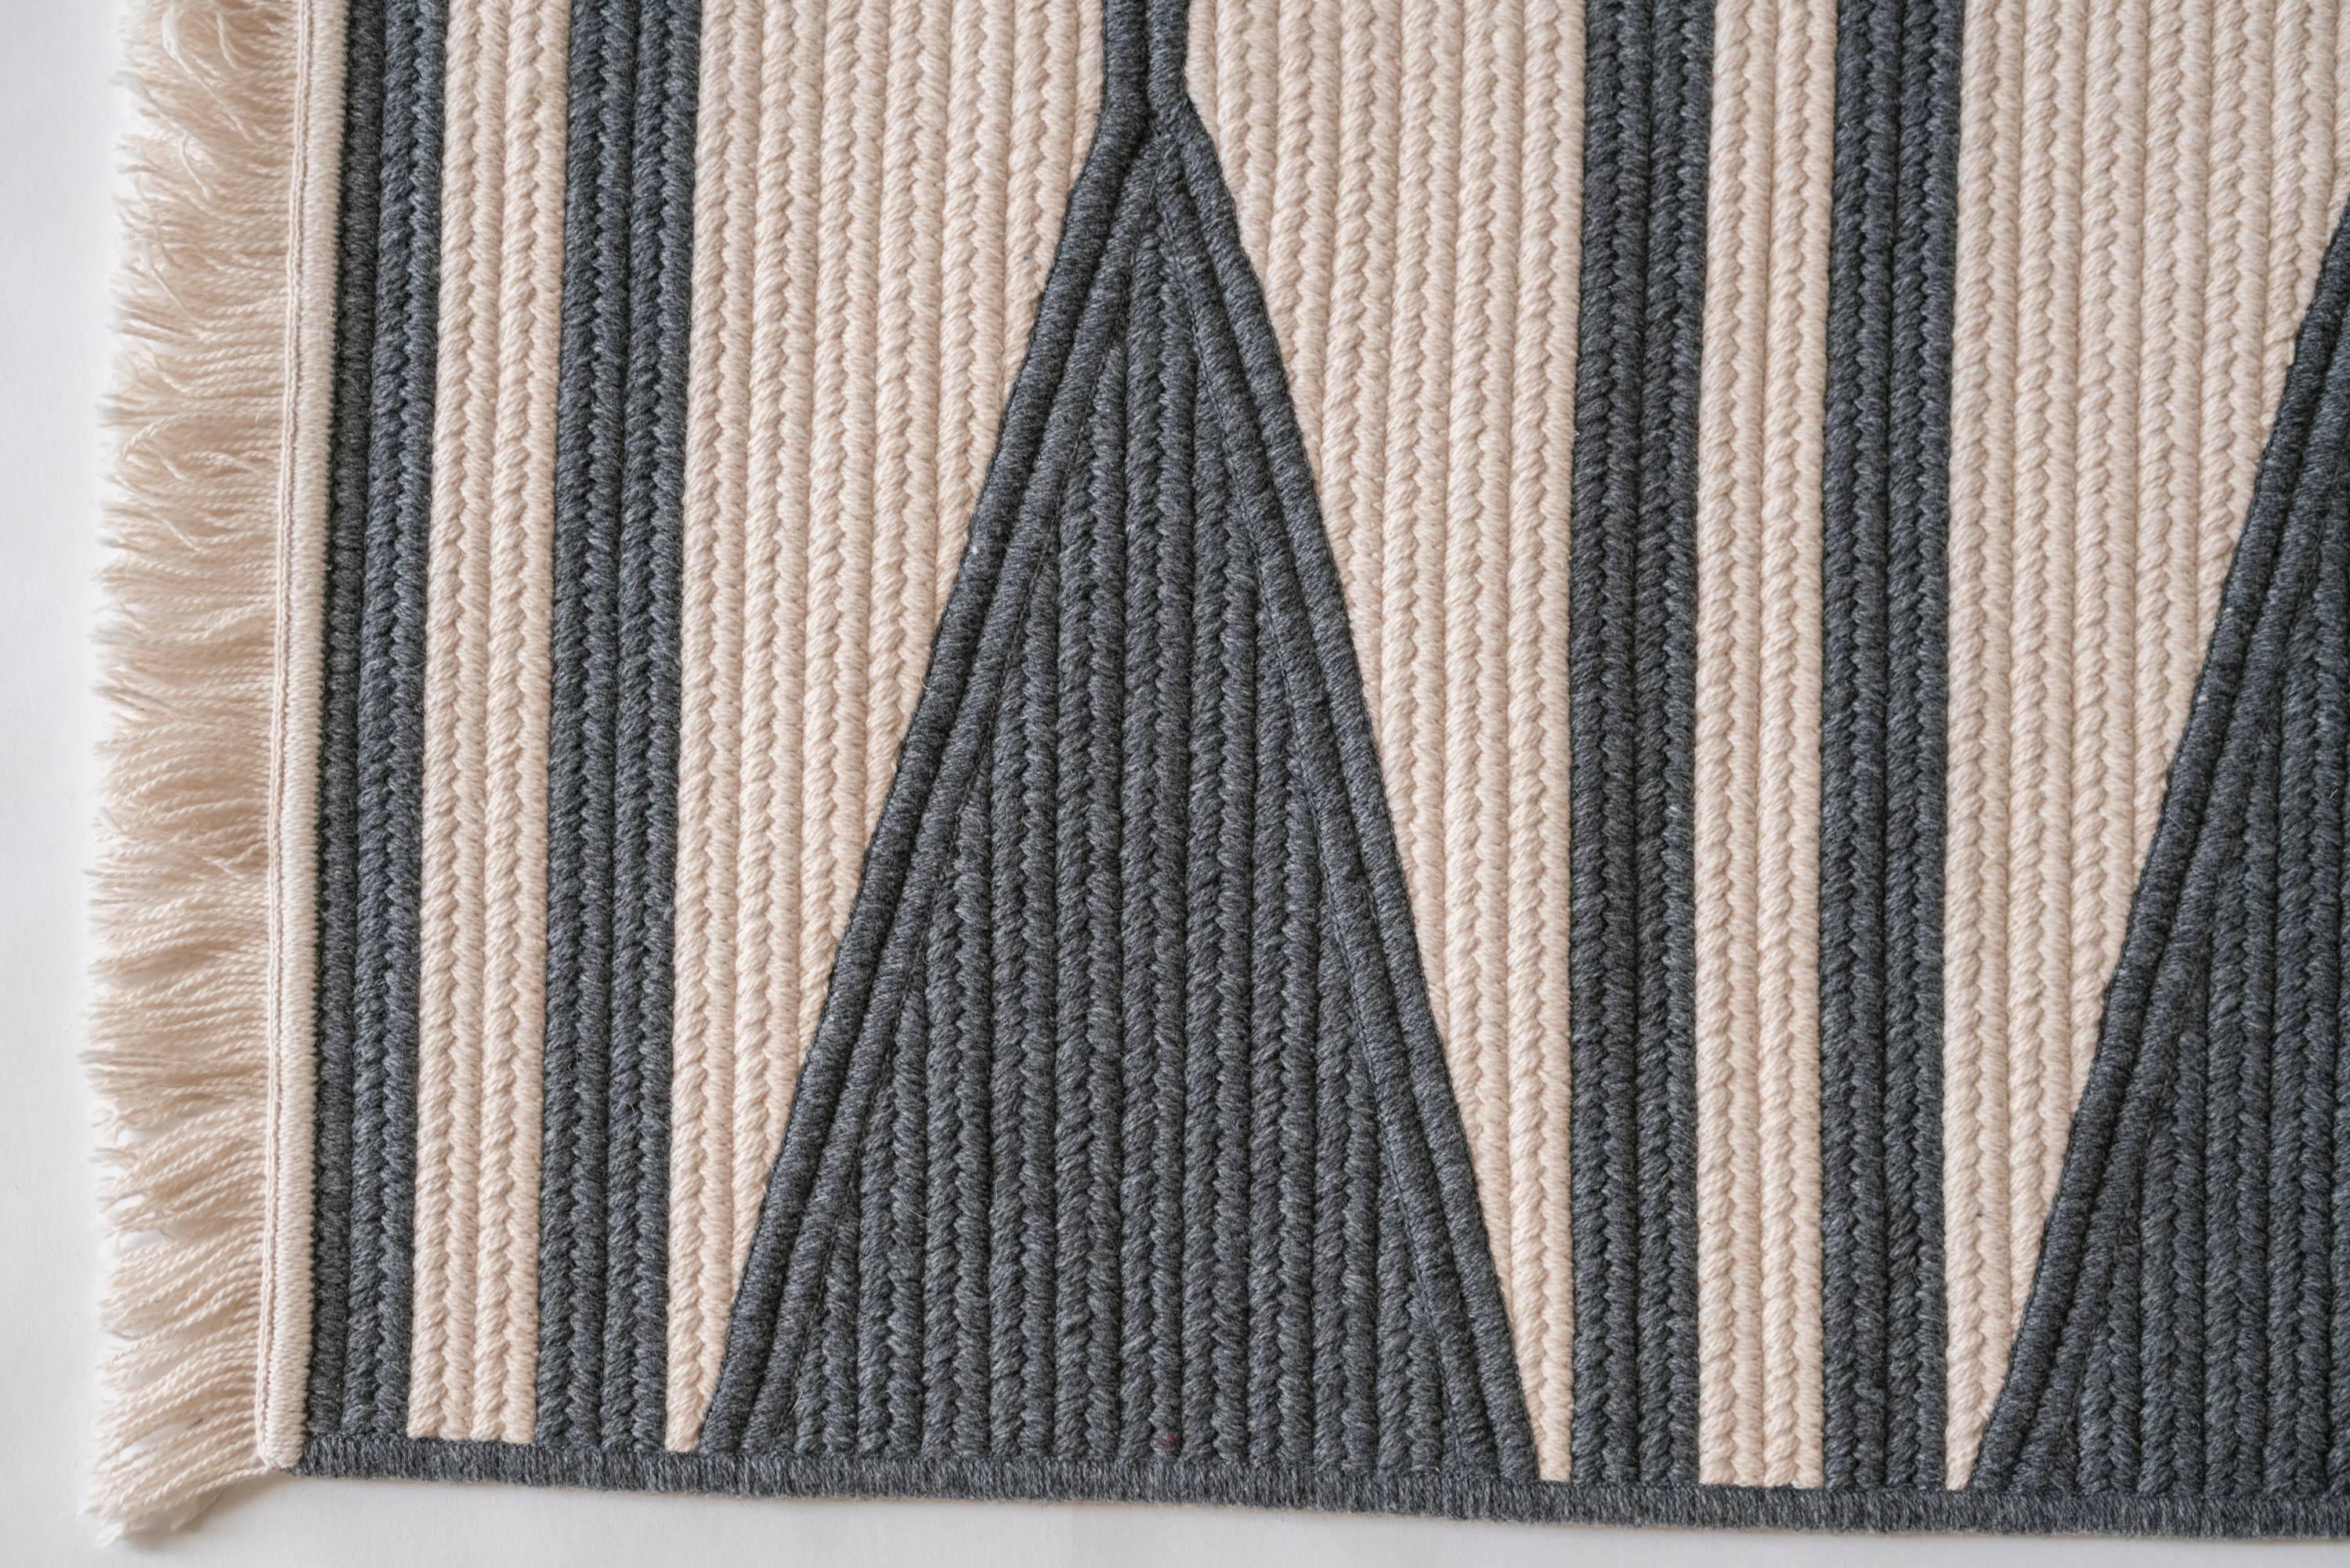 Aya slate and white wool blend rug in a 8'x9'4